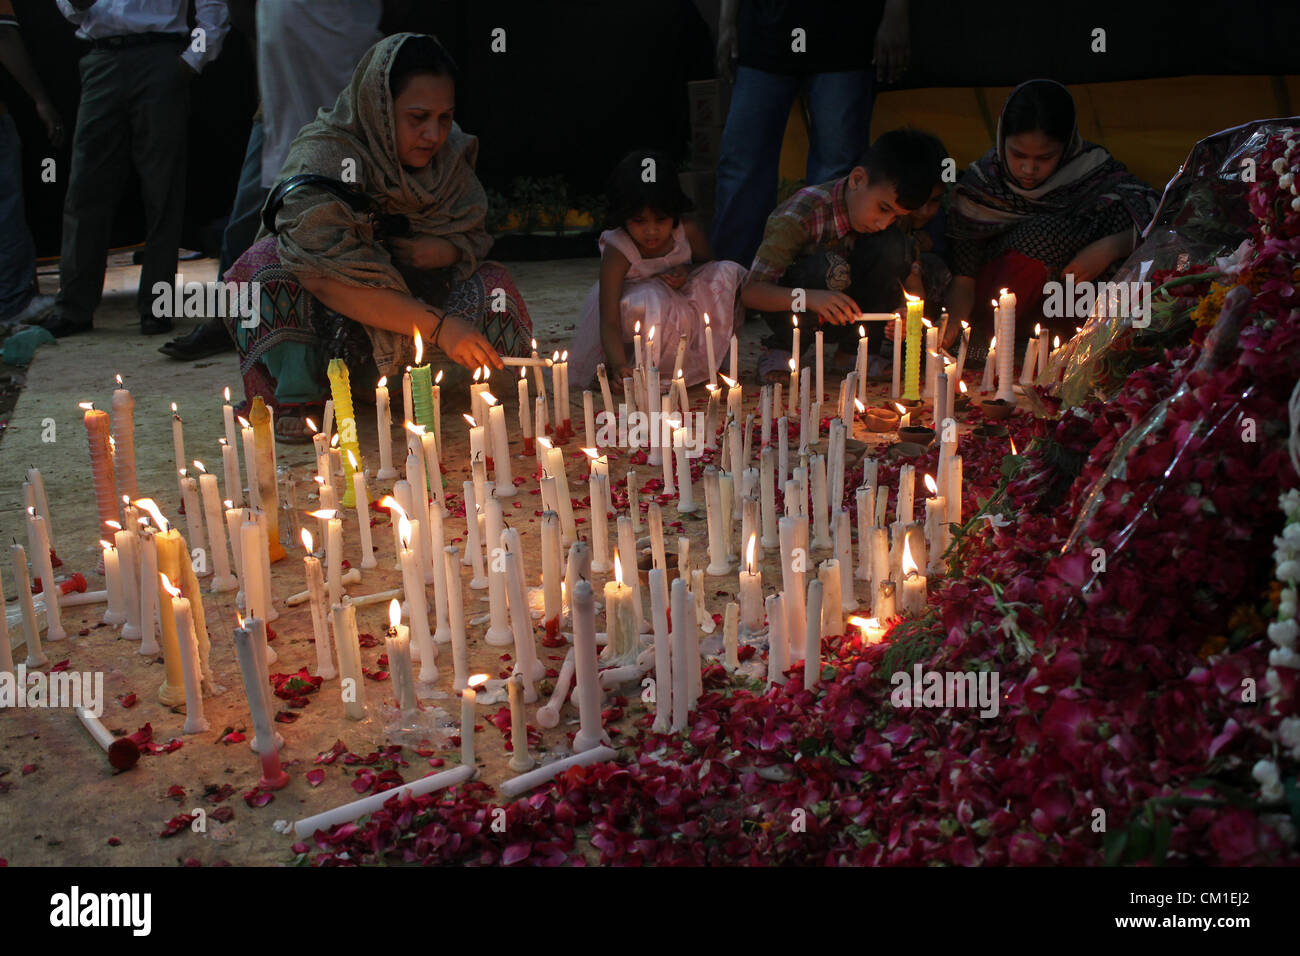 Los familiares de los trabajadores de la fábrica quemada encienden velas en el lugar del incidente en Karachi, Pakistán el 13 de septiembre de 2012. Al menos 289 trabajadores de la fábrica fueron quemados cuando el fuego envolvió una fábrica textil el miércoles. Foto de stock